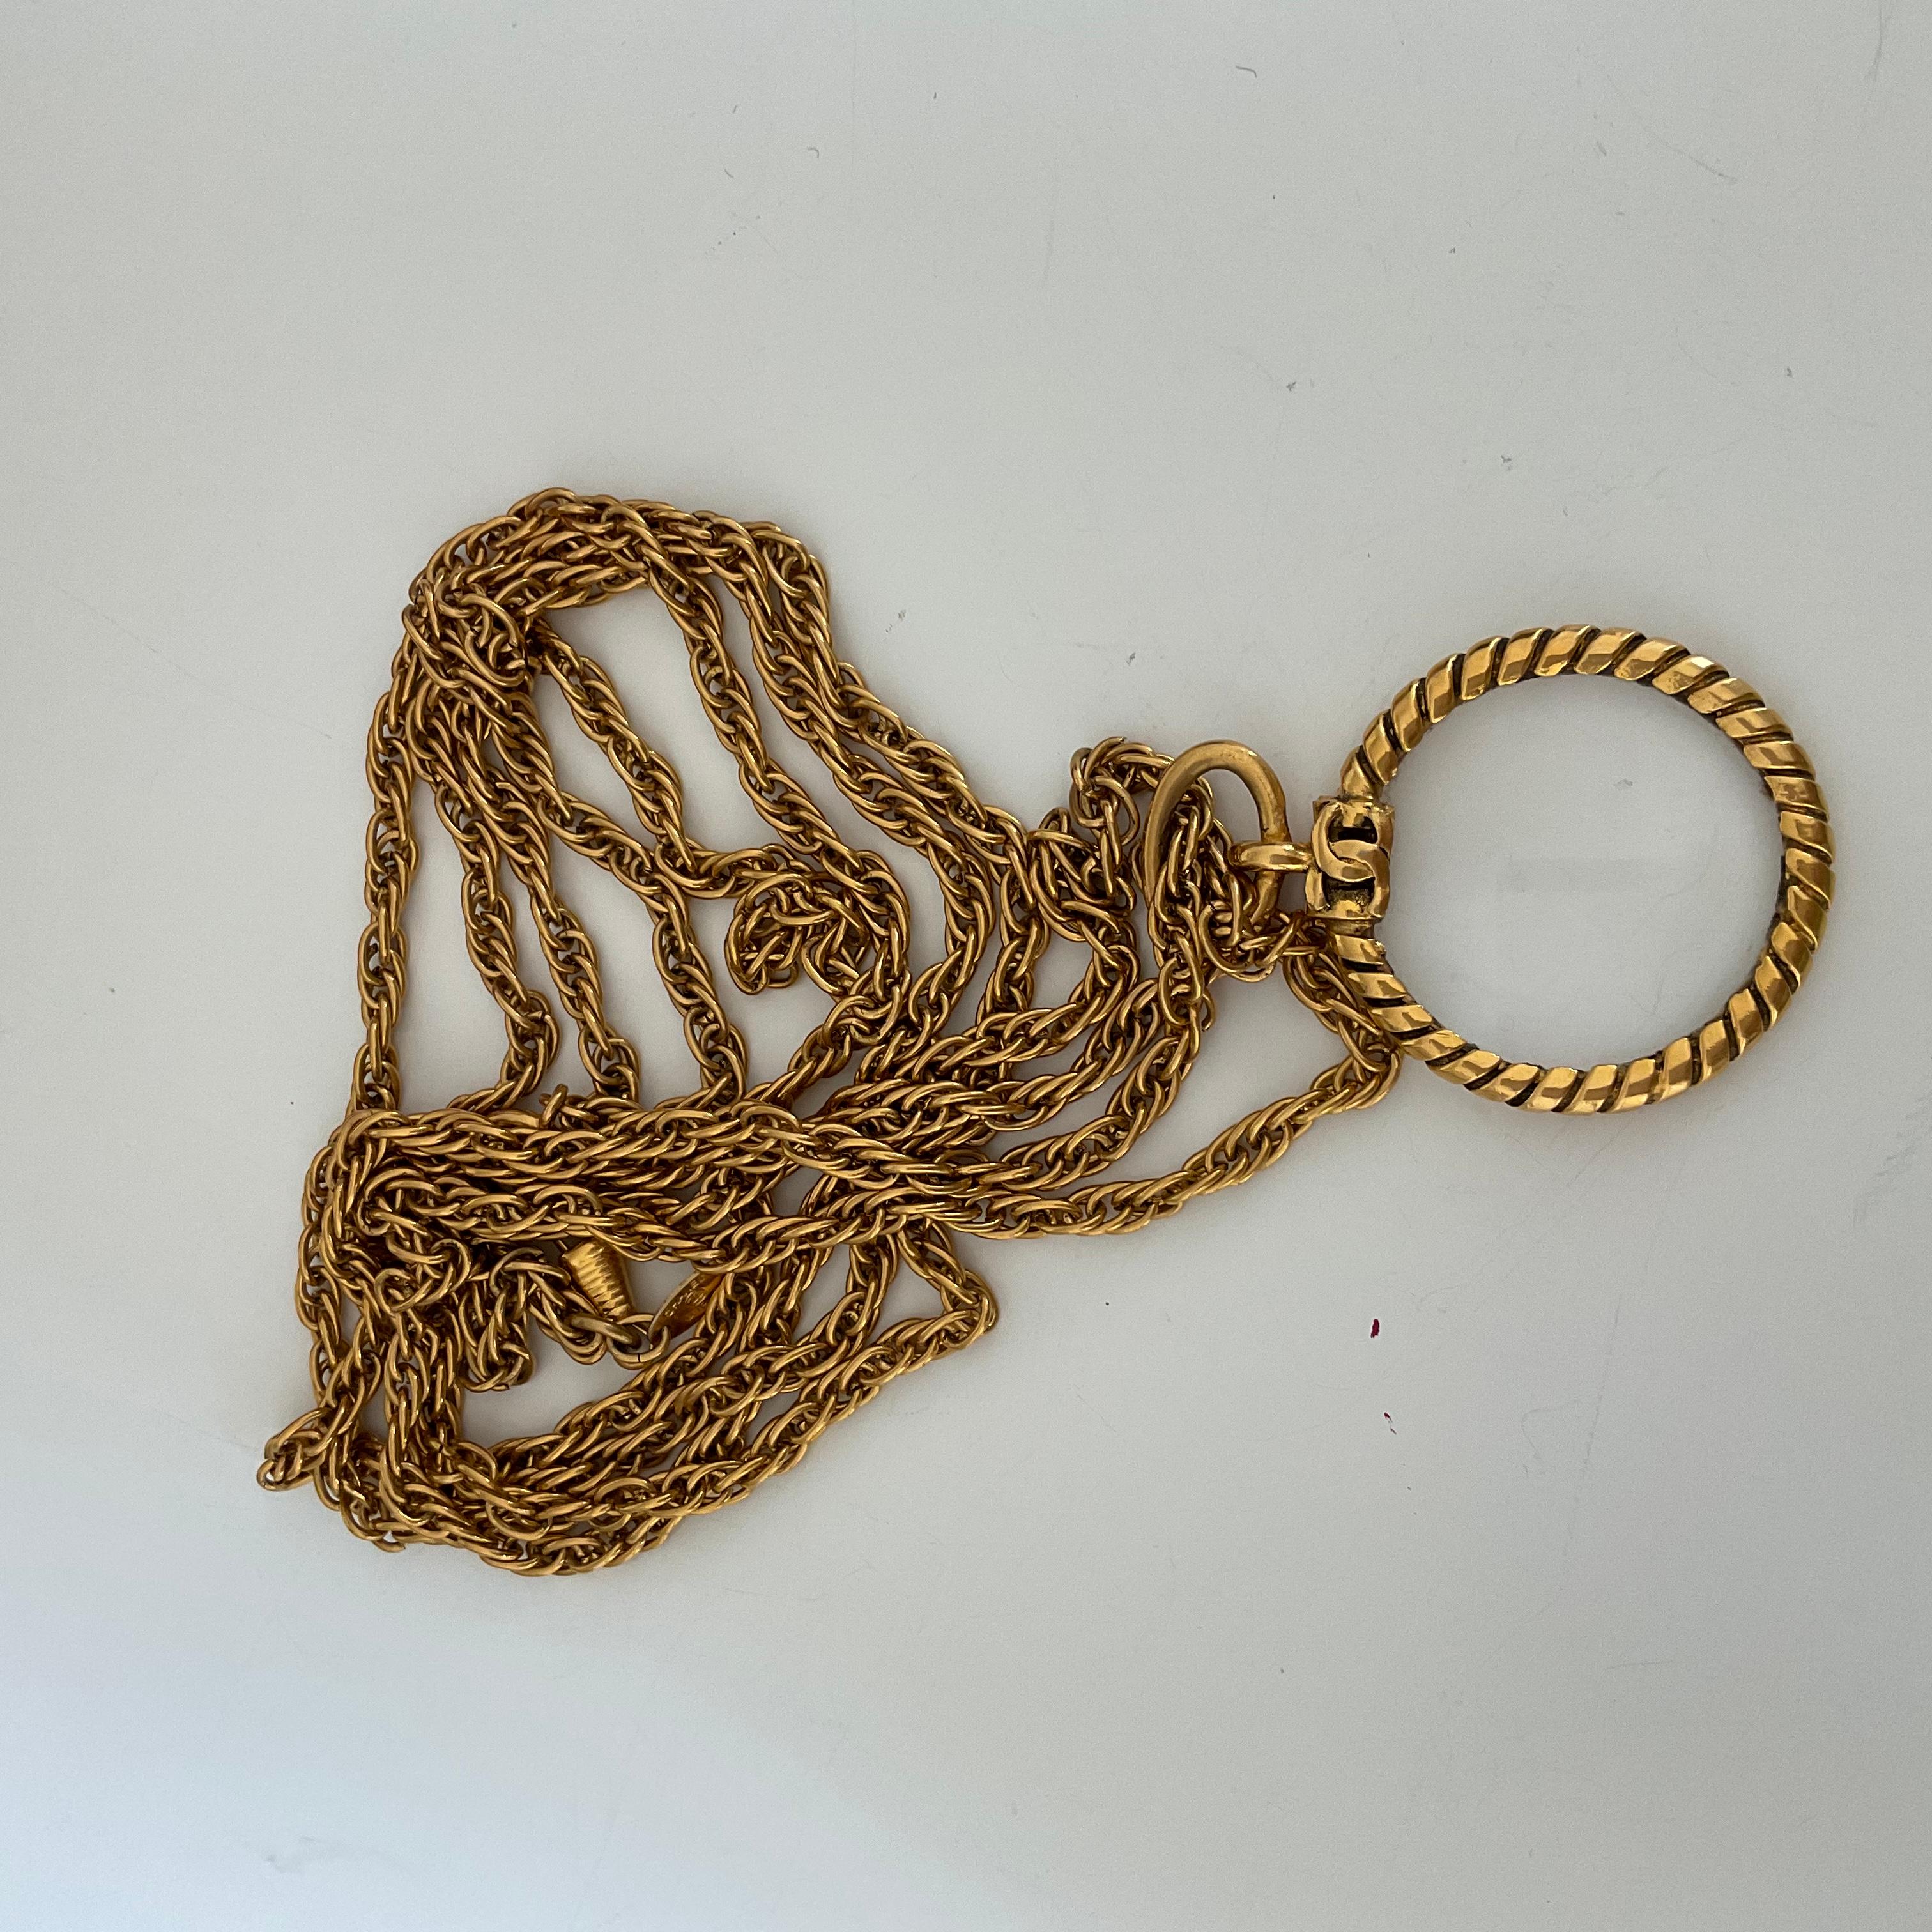 Dieses seltene Stück ist eine vergoldete Vintage CHANEL-Halskette, die aus doppelt gedrehten Ketten besteht. Als Anhänger finden Sie ein Lupenglas, das von einer weiteren Torsade umgeben ist. Auf der Oberseite des Anhängers, wo die Ketten befestigt